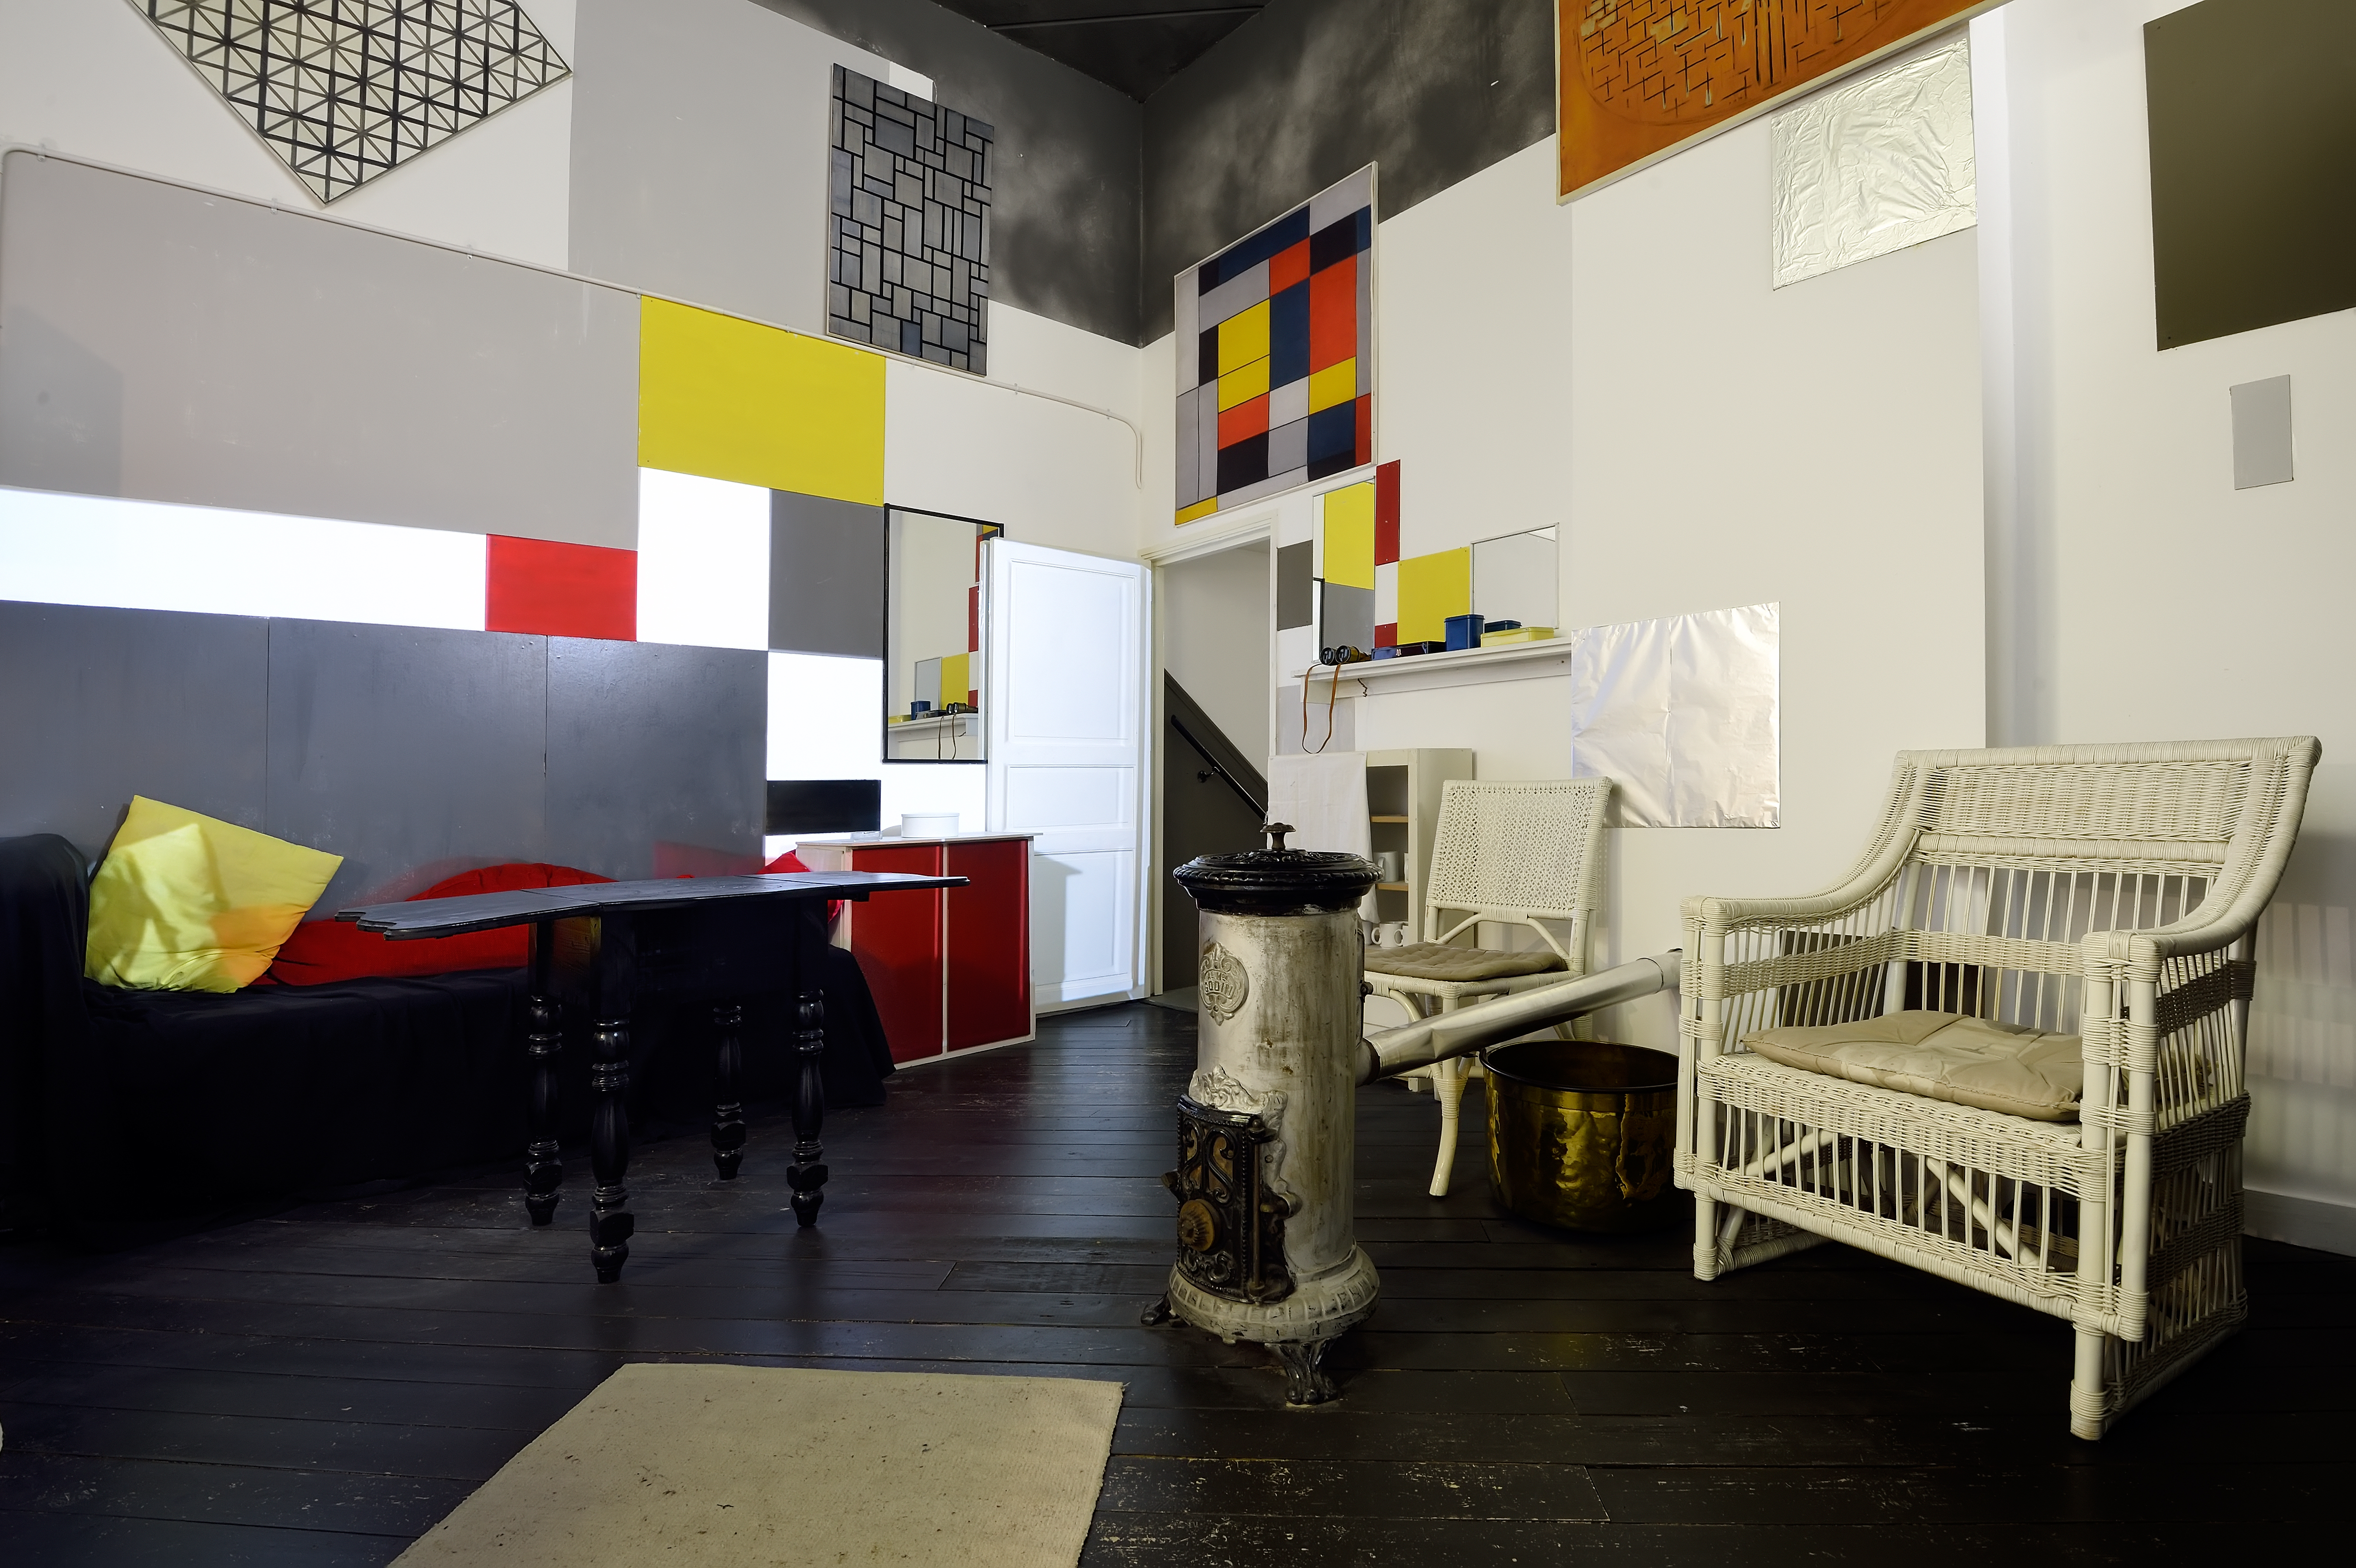 Reconstructed Parisian studio of Mondrian in Mondriaanhuis1 - Photo Mike Bink.jpg